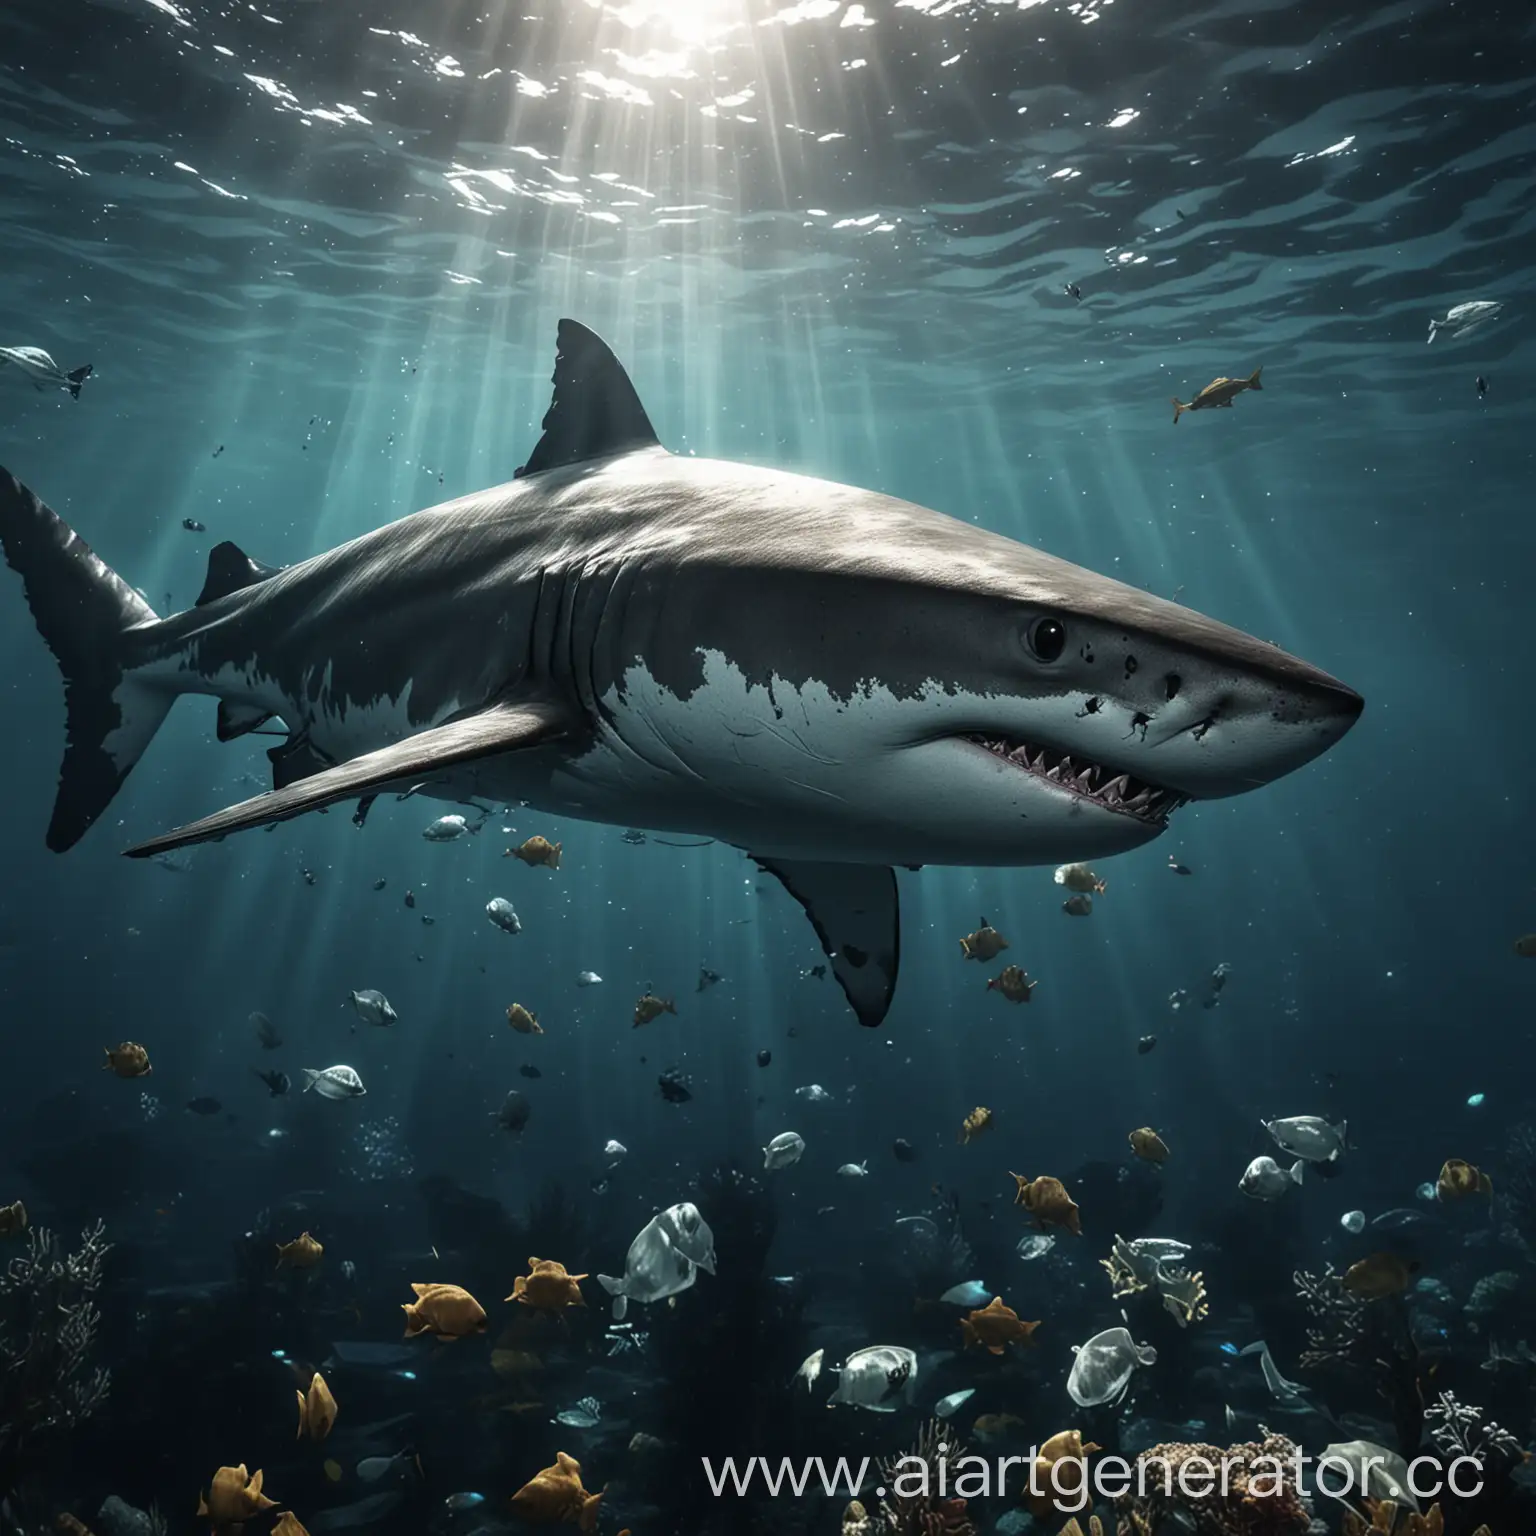 Акула под водой, стиль как в игре, изображение для заставки, ультра качество, красивая акула